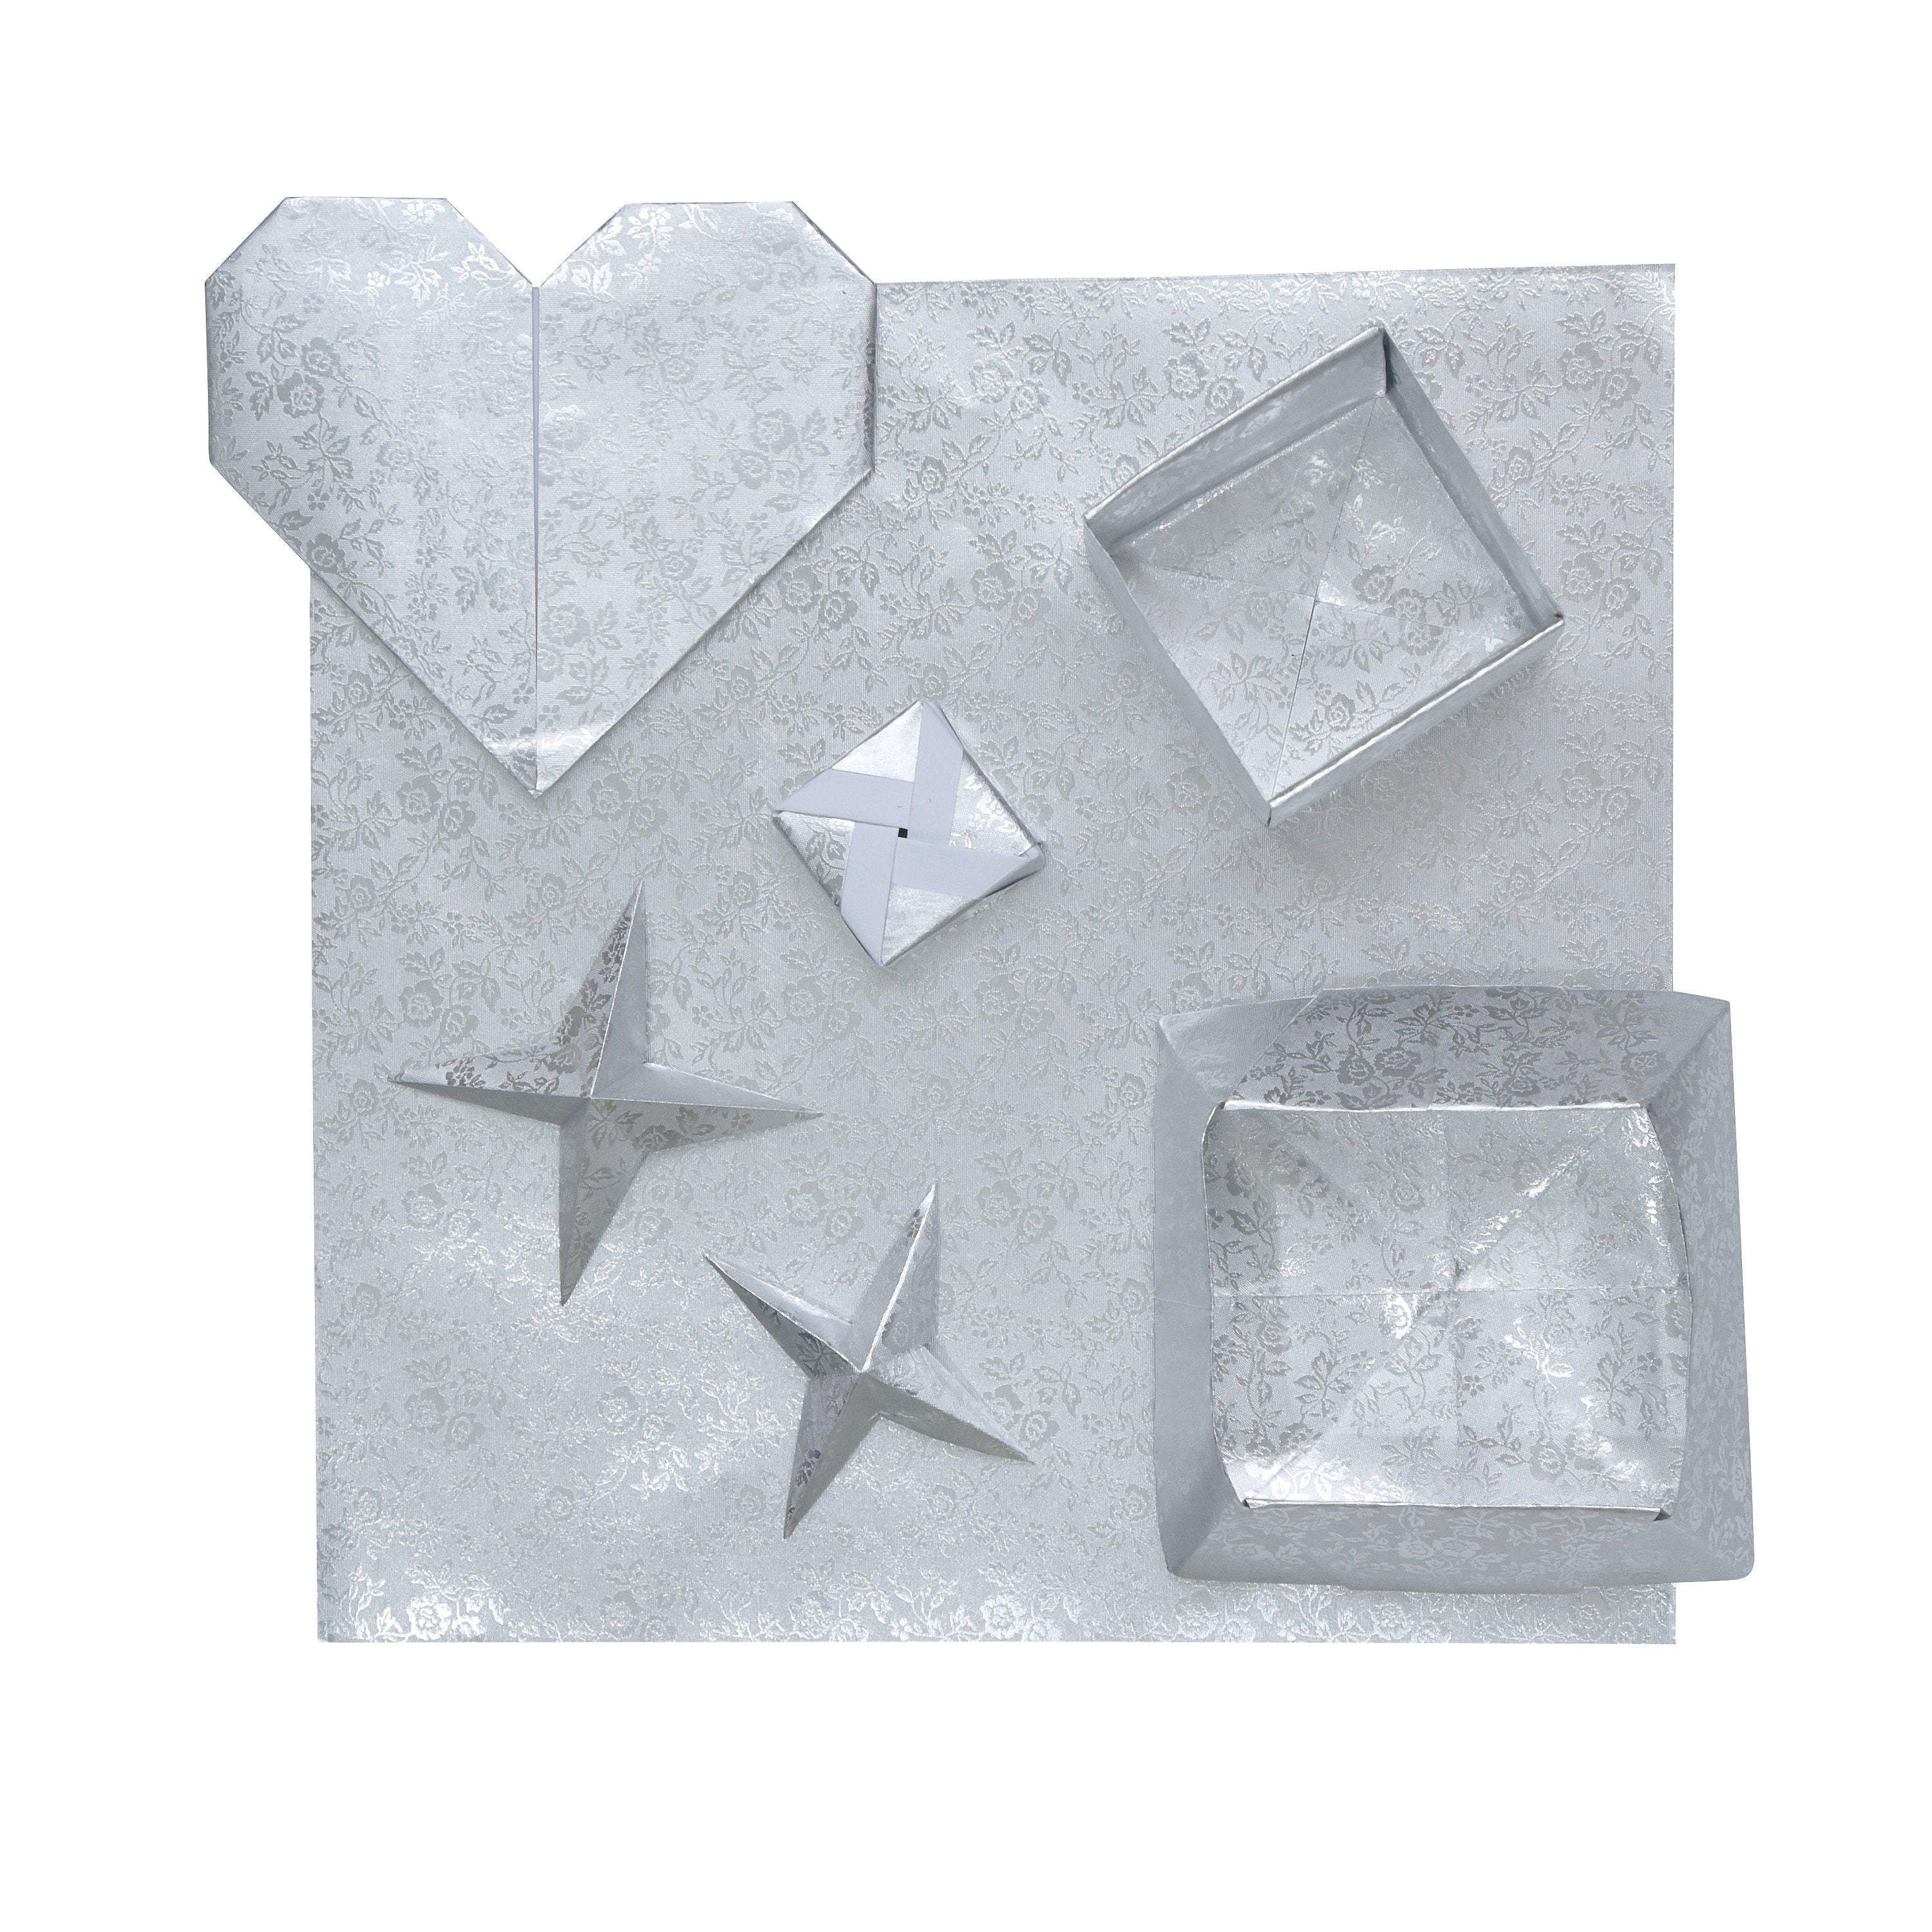 100 fogli di carta origami argento - 6x6 pollici - per carta pieghevole, gru origami, scrapbooking